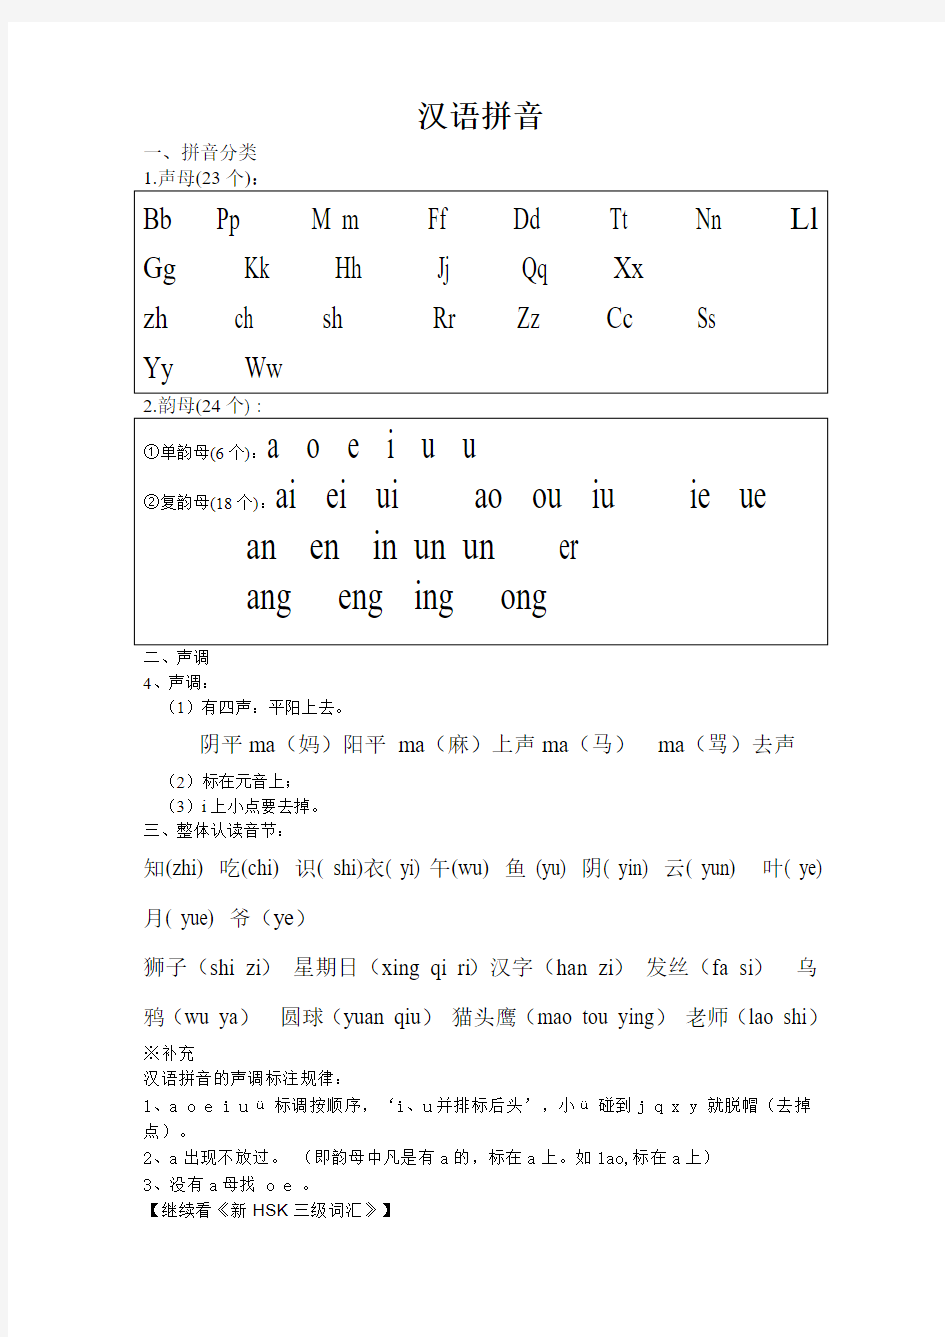 汉语拼音学习(对外汉语)